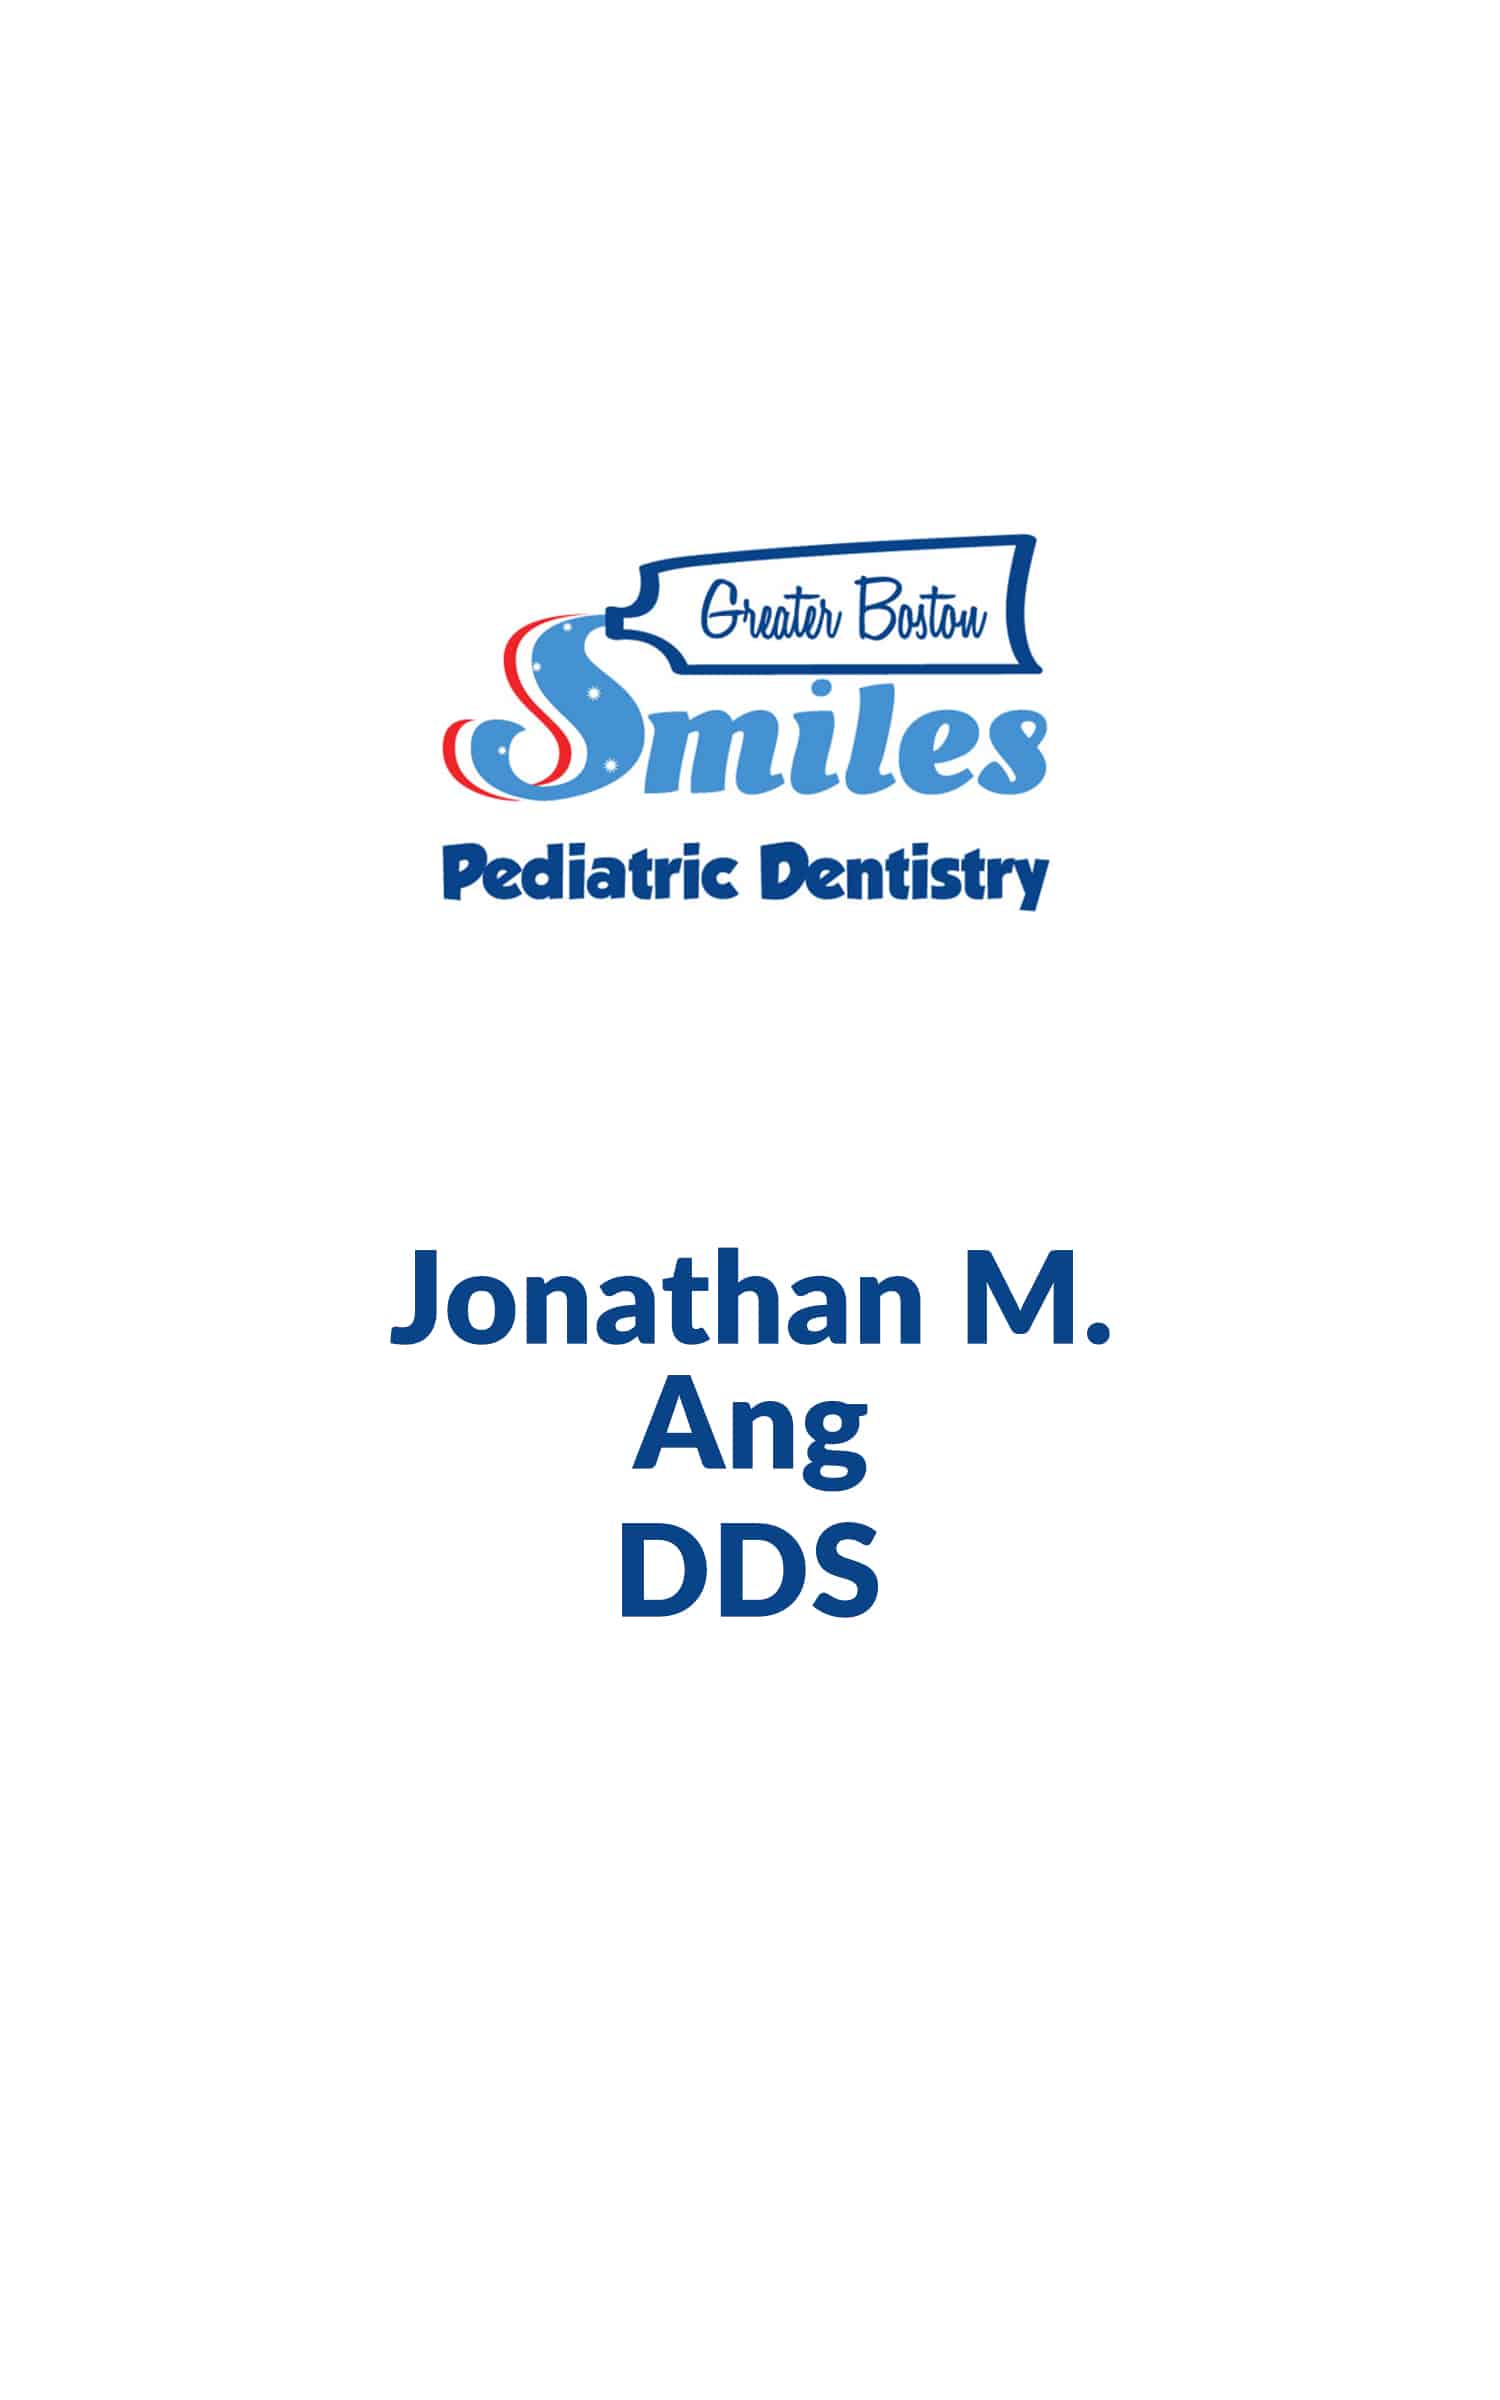  Jonathan M. Ang, DDS  Photo